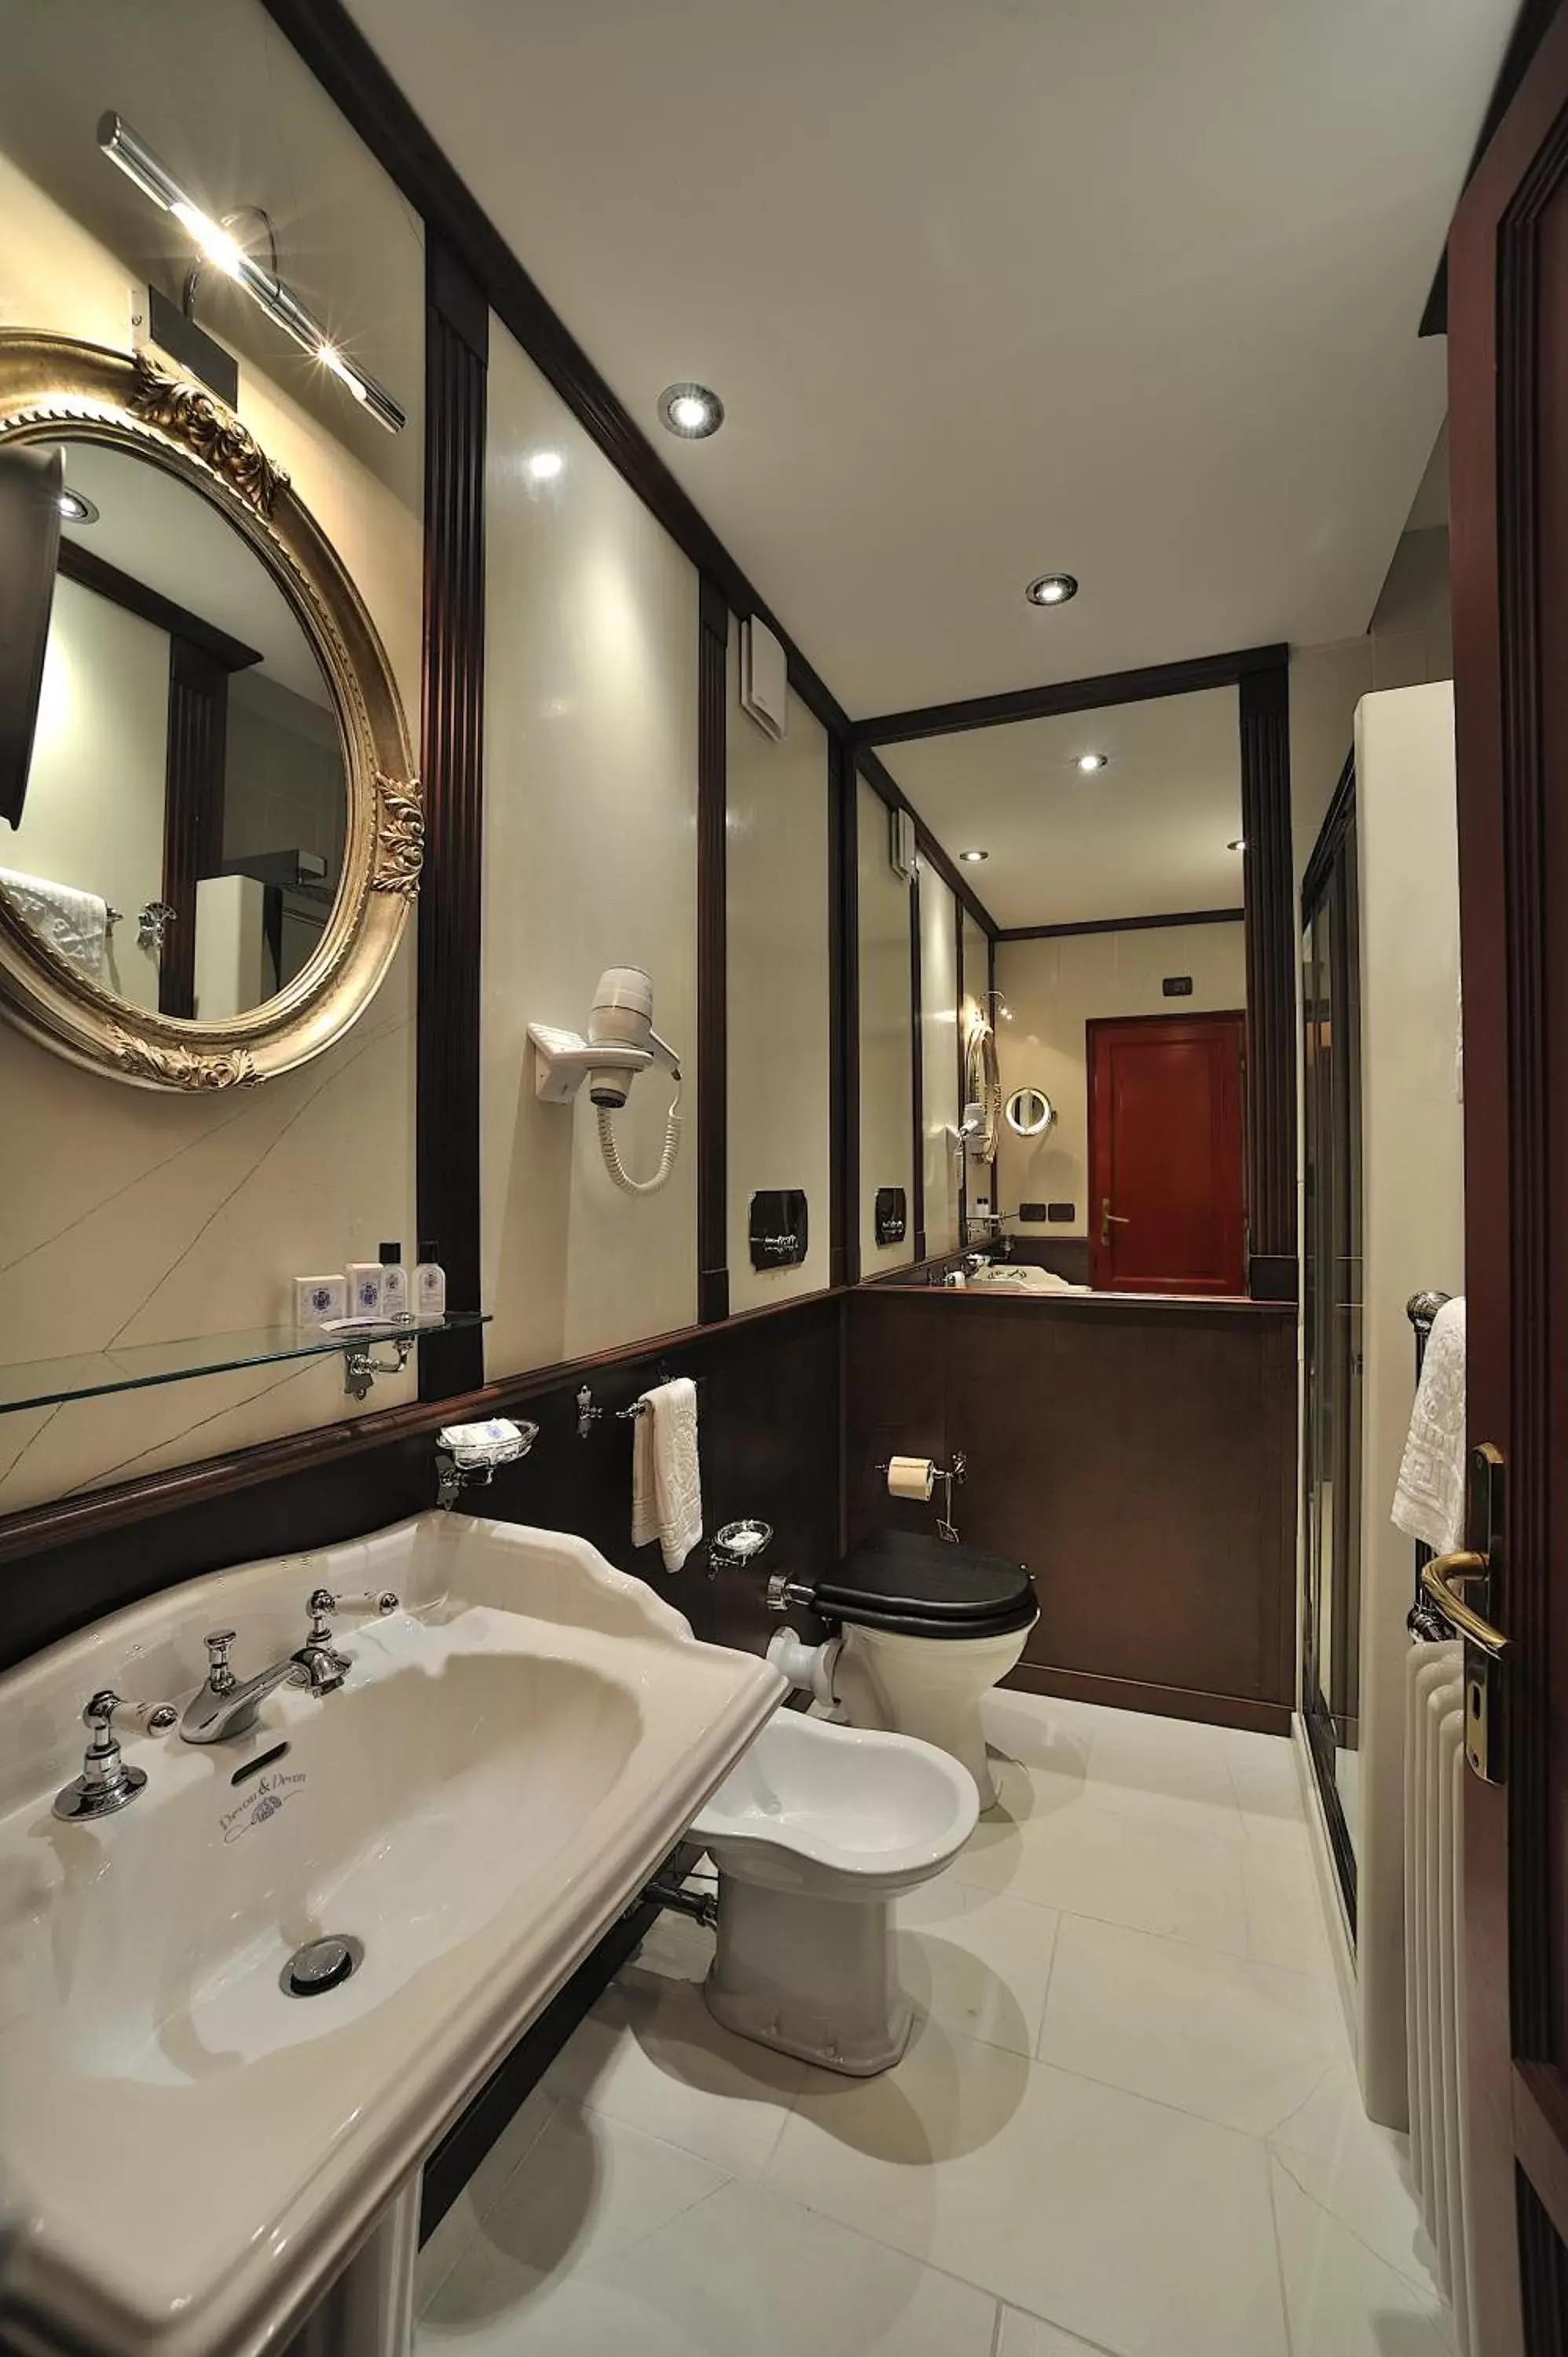 Bathroom in Hotel Bonconte